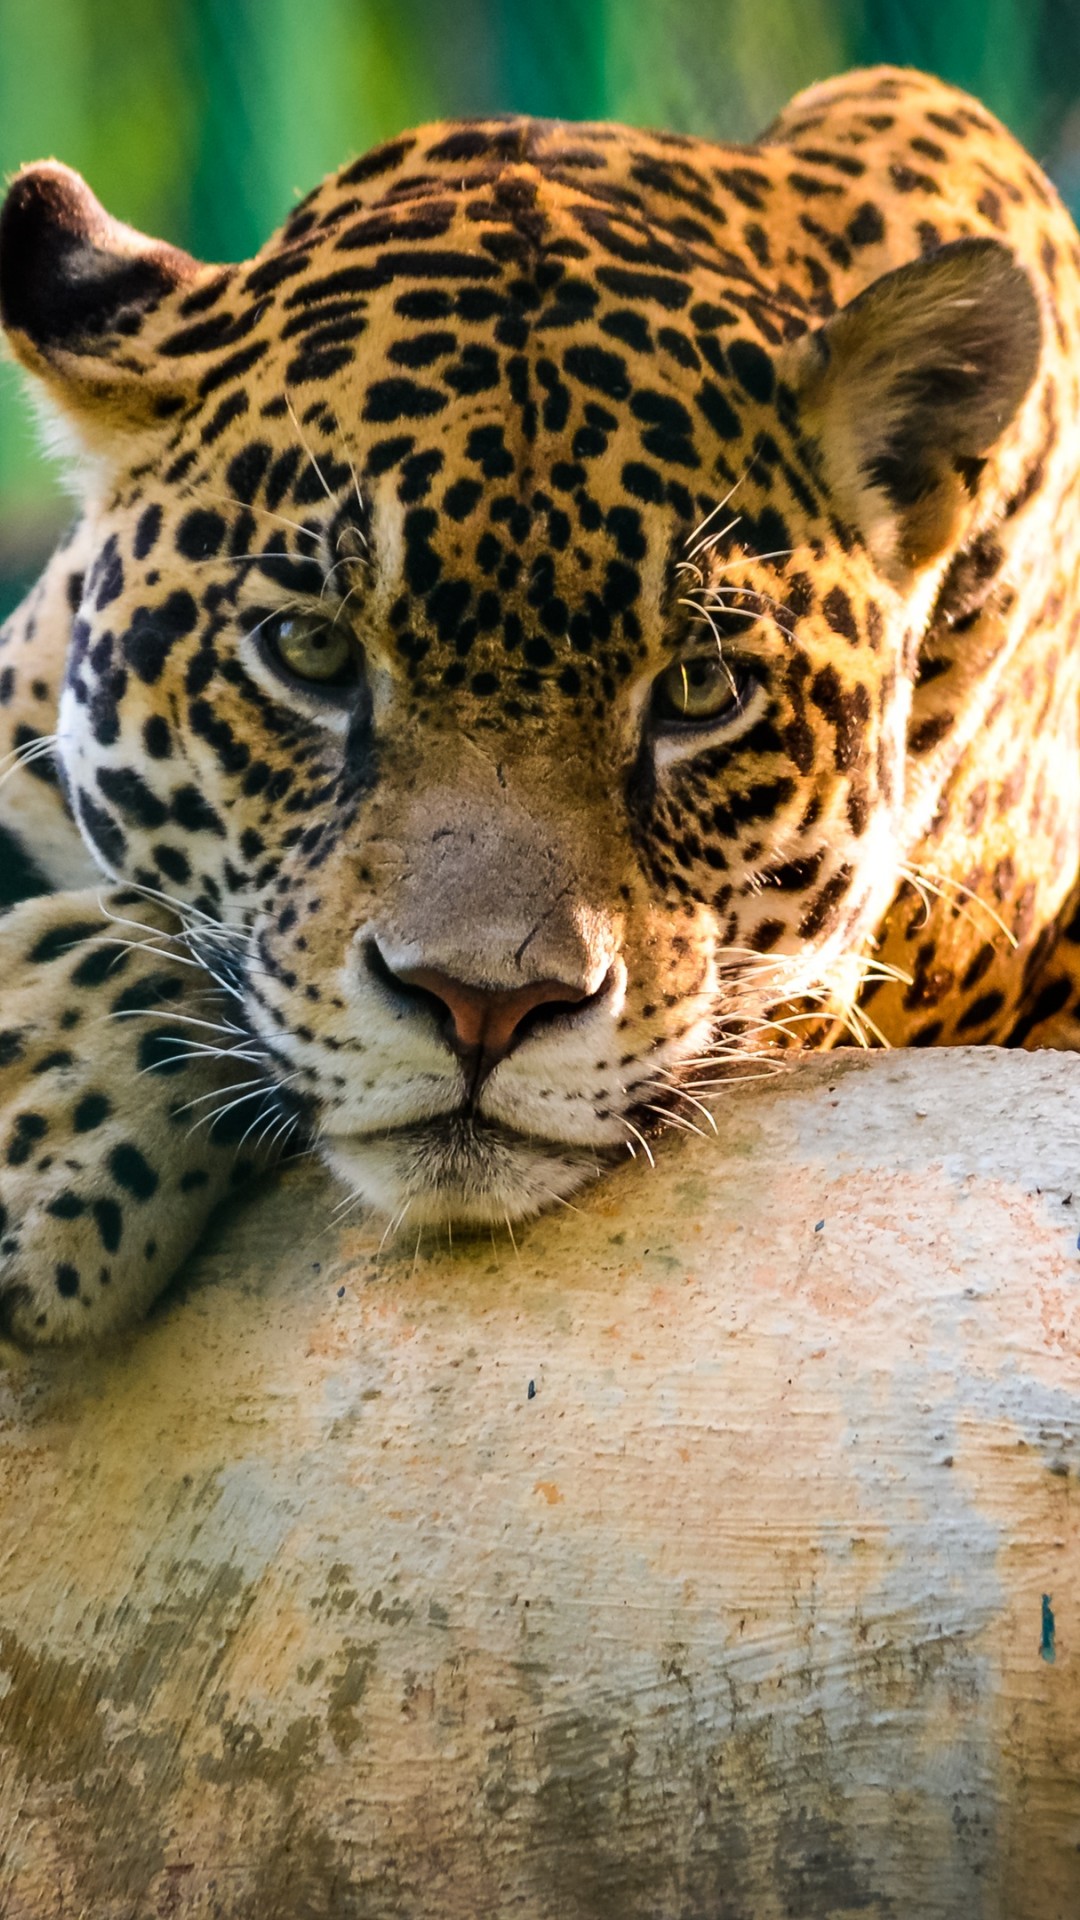 Jaguar Animal Wallpaper for Desktop and Mobiles iPhone 6 / 6S Plus - HD  Wallpaper 